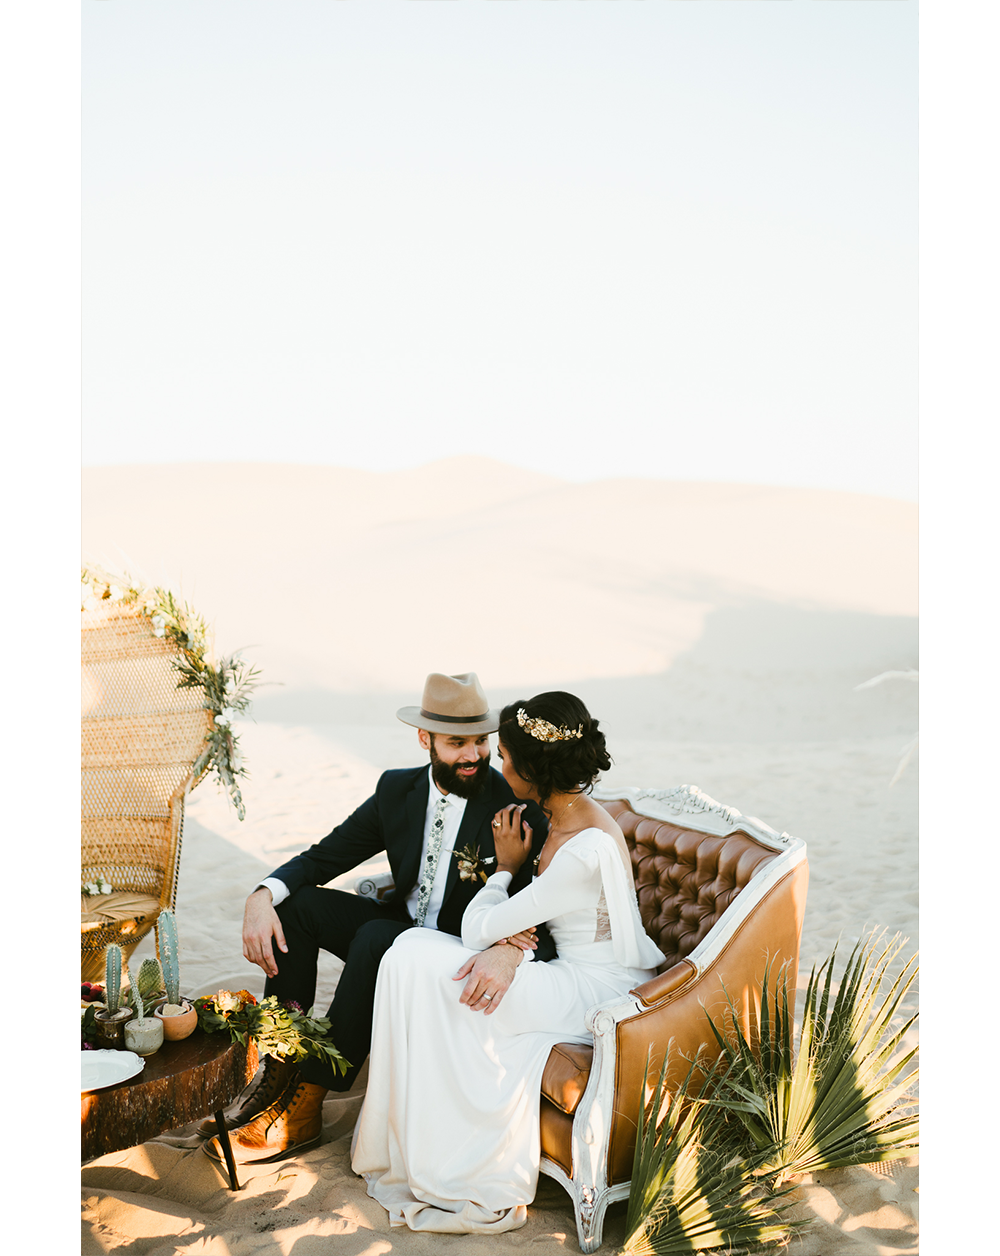 Frida enamorada boda en el desierto de baja california mexico 17.png